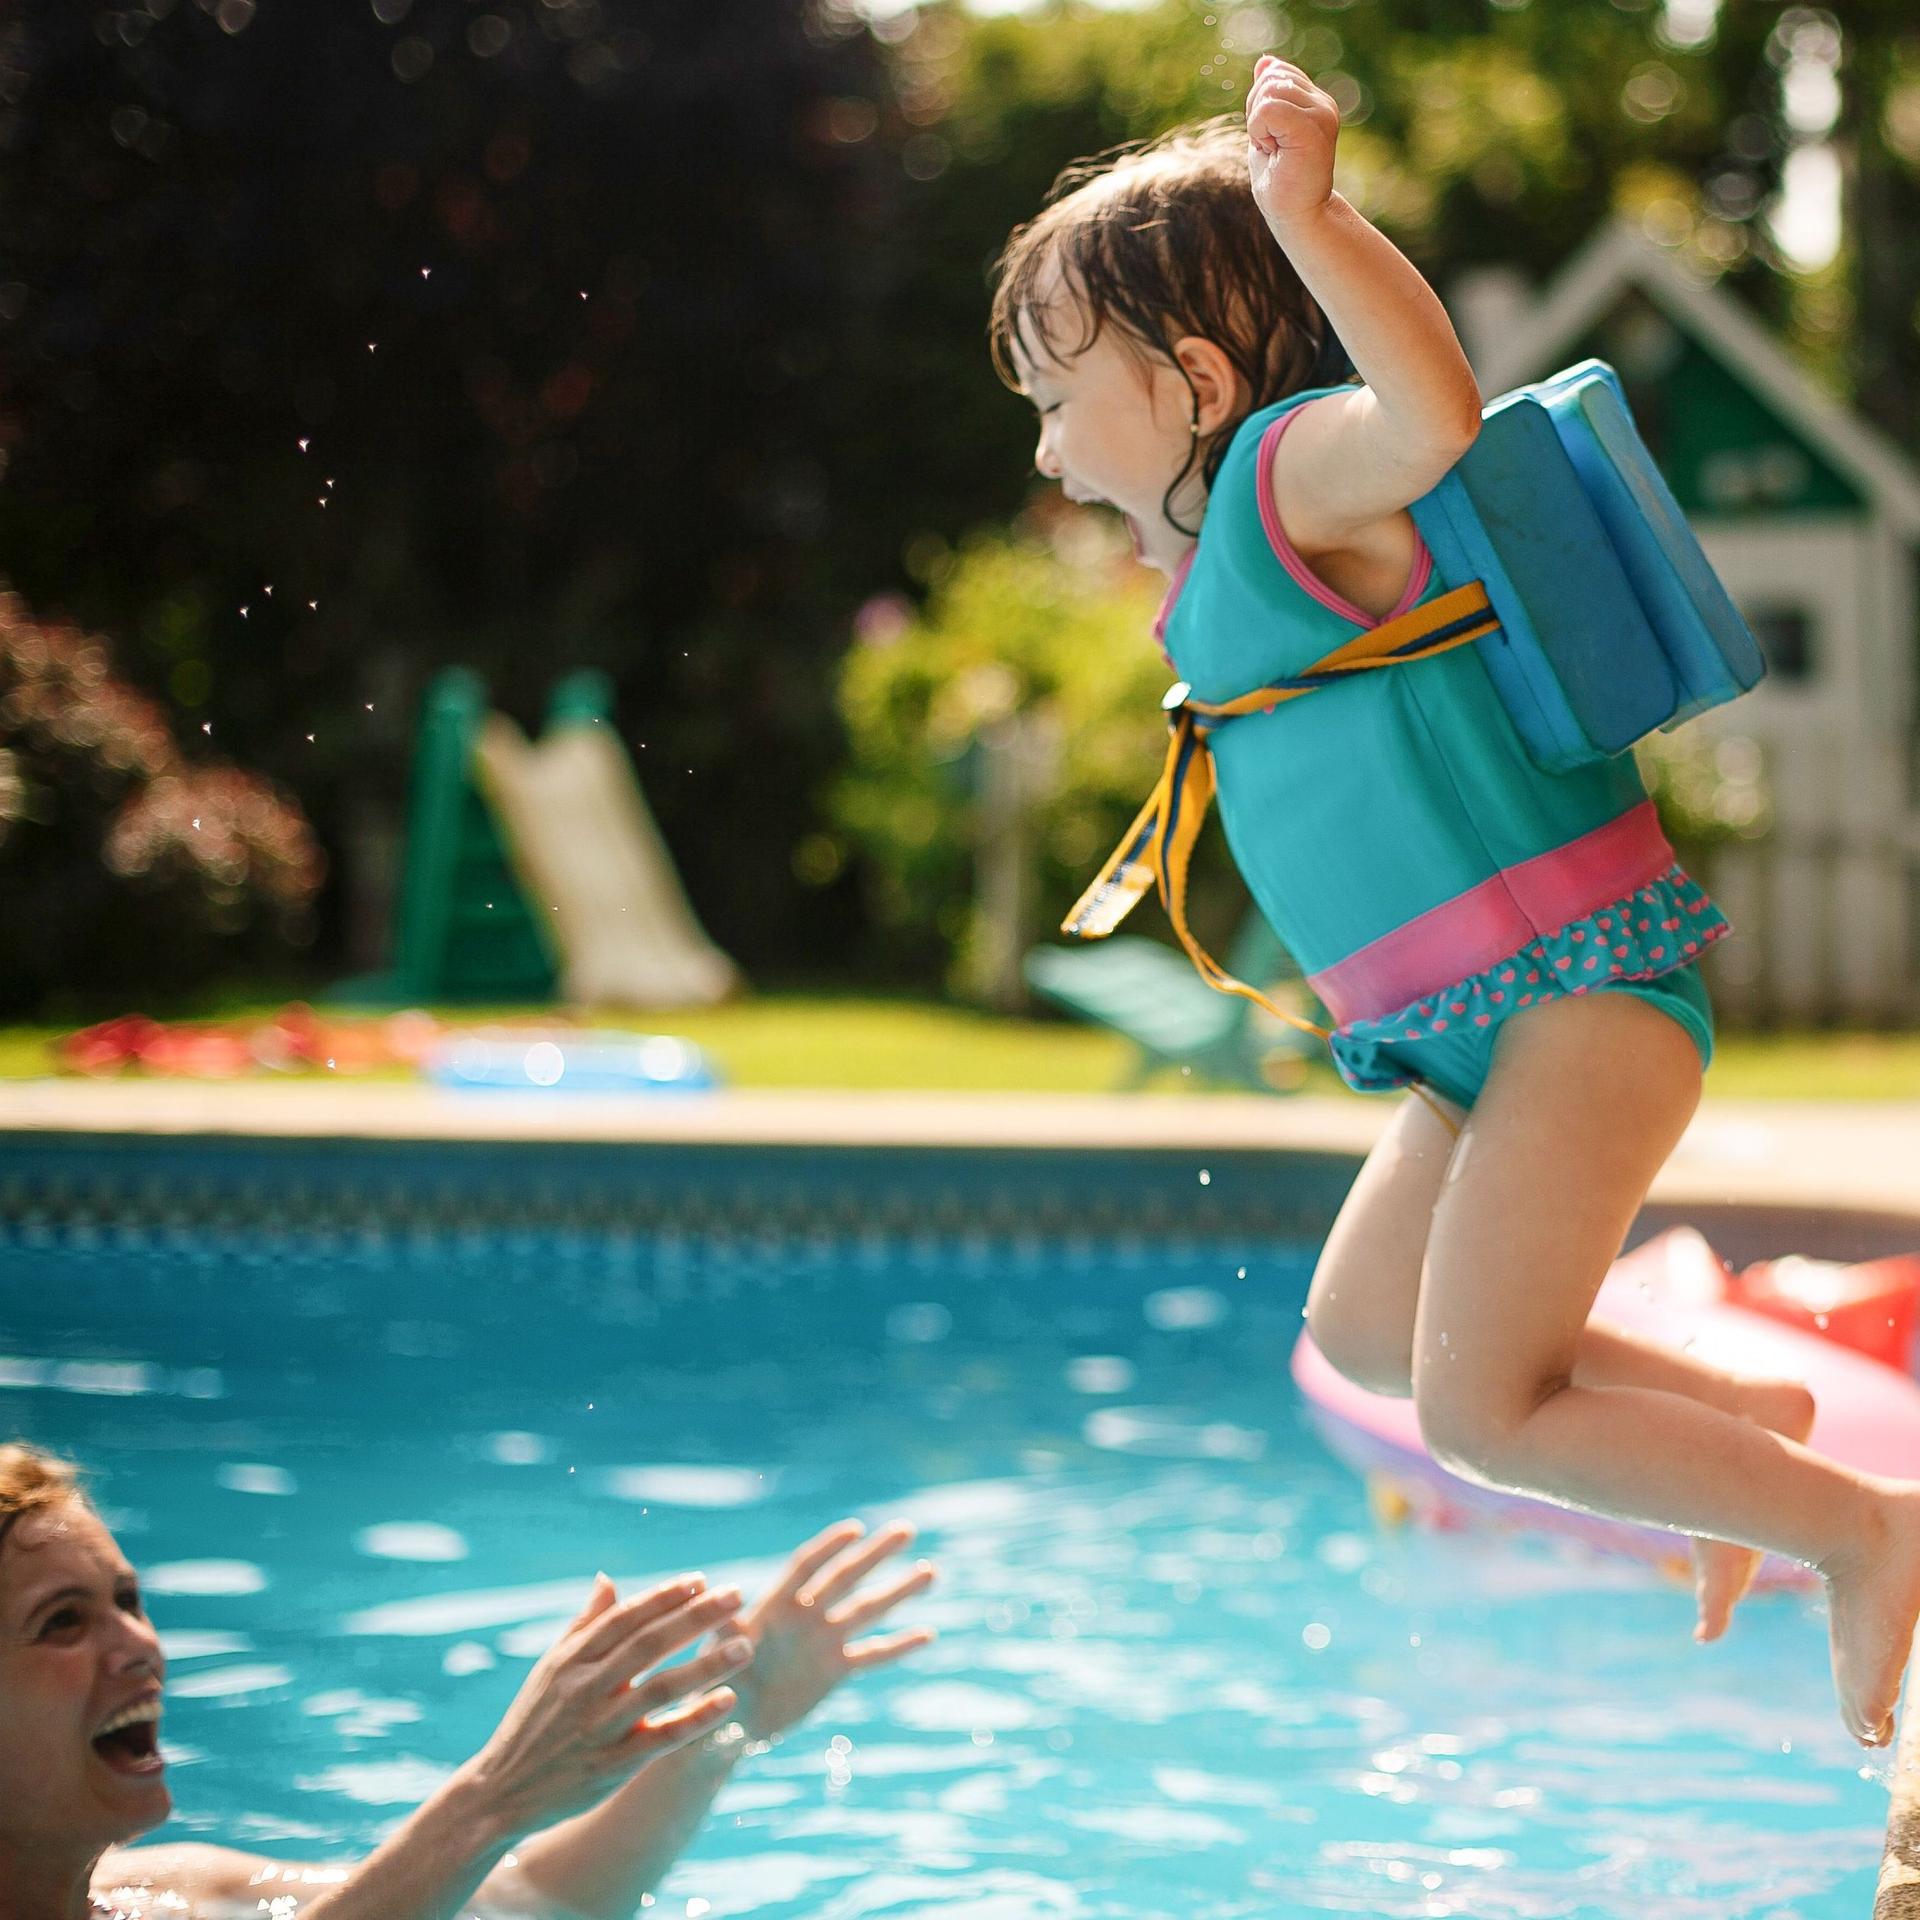 Ein Mädchen im Kindergartenalter springt mit Schwimmweste in einen Pool. Ein Mann steht im Wasser und streckt ihr die Arme entgegen.